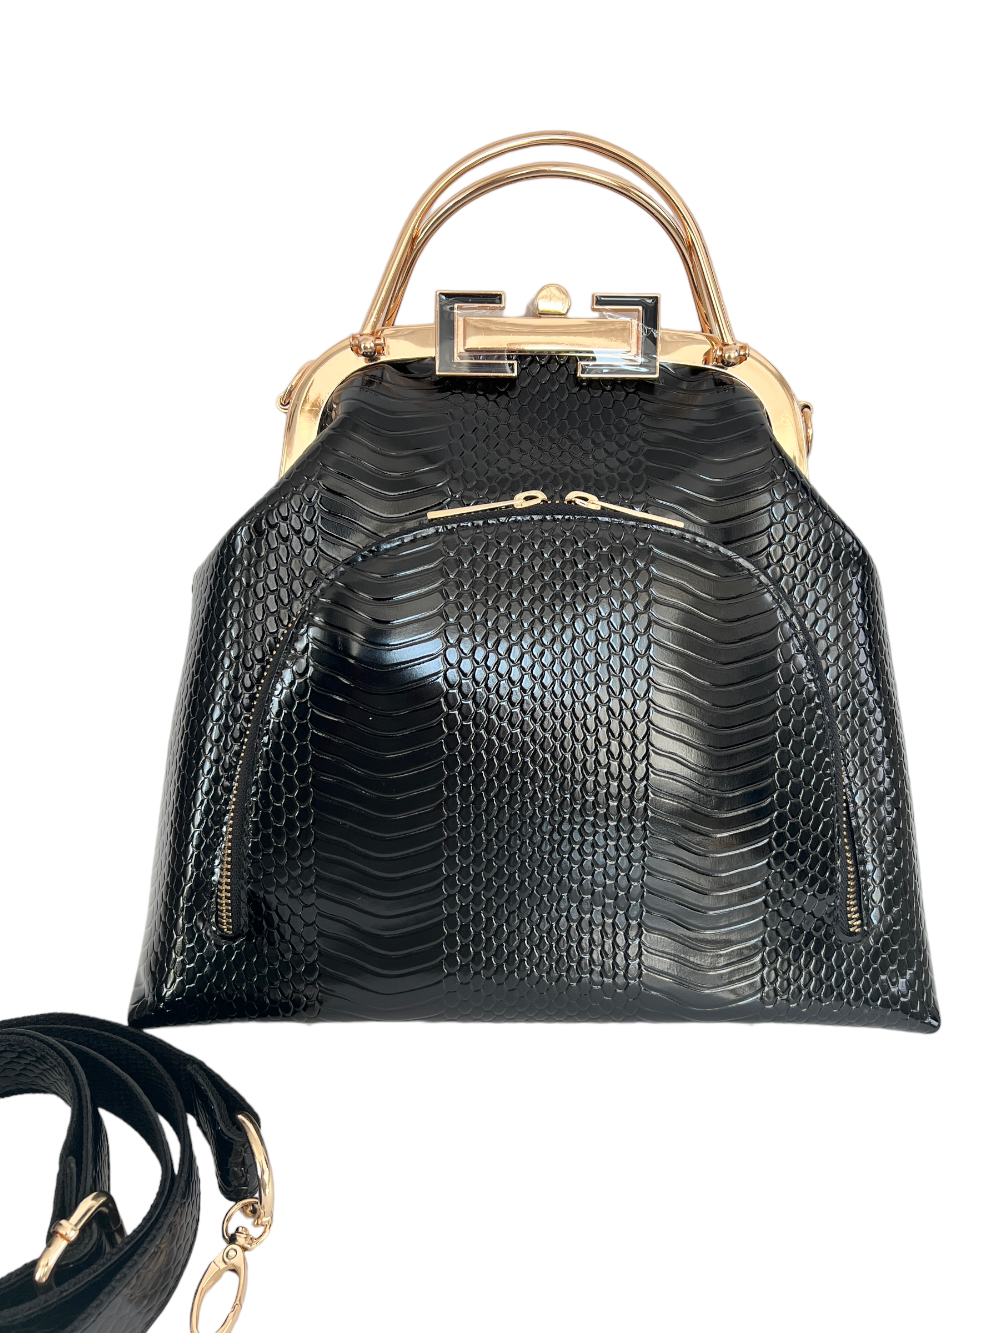 картинка кожаные  "Лерден-18" - Женская сумка из кожи с фермуаром. Черная змея, лак, тиснение, золото от Ирины Берзиной